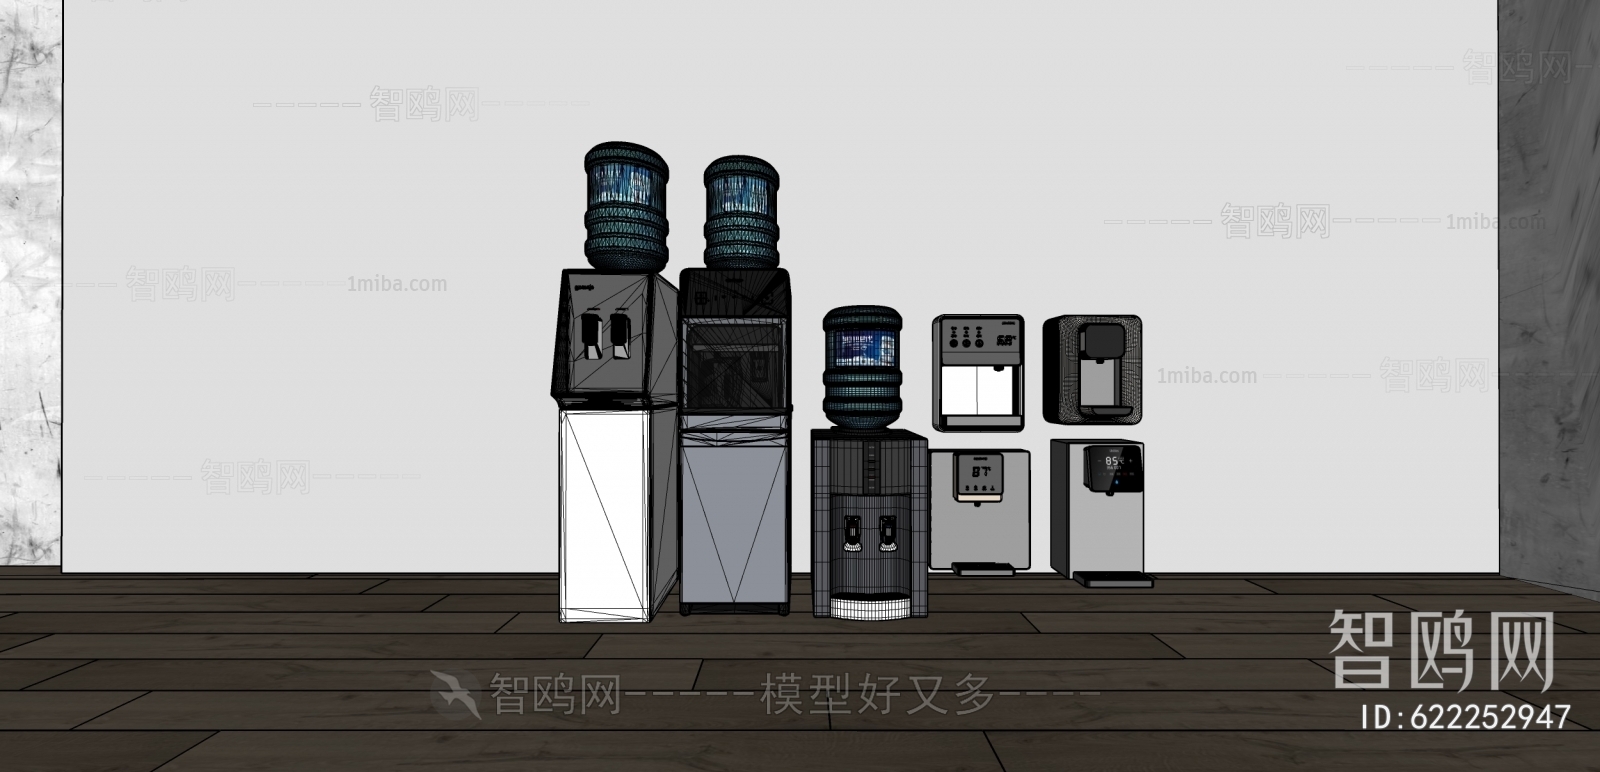 Modern Water Dispenser